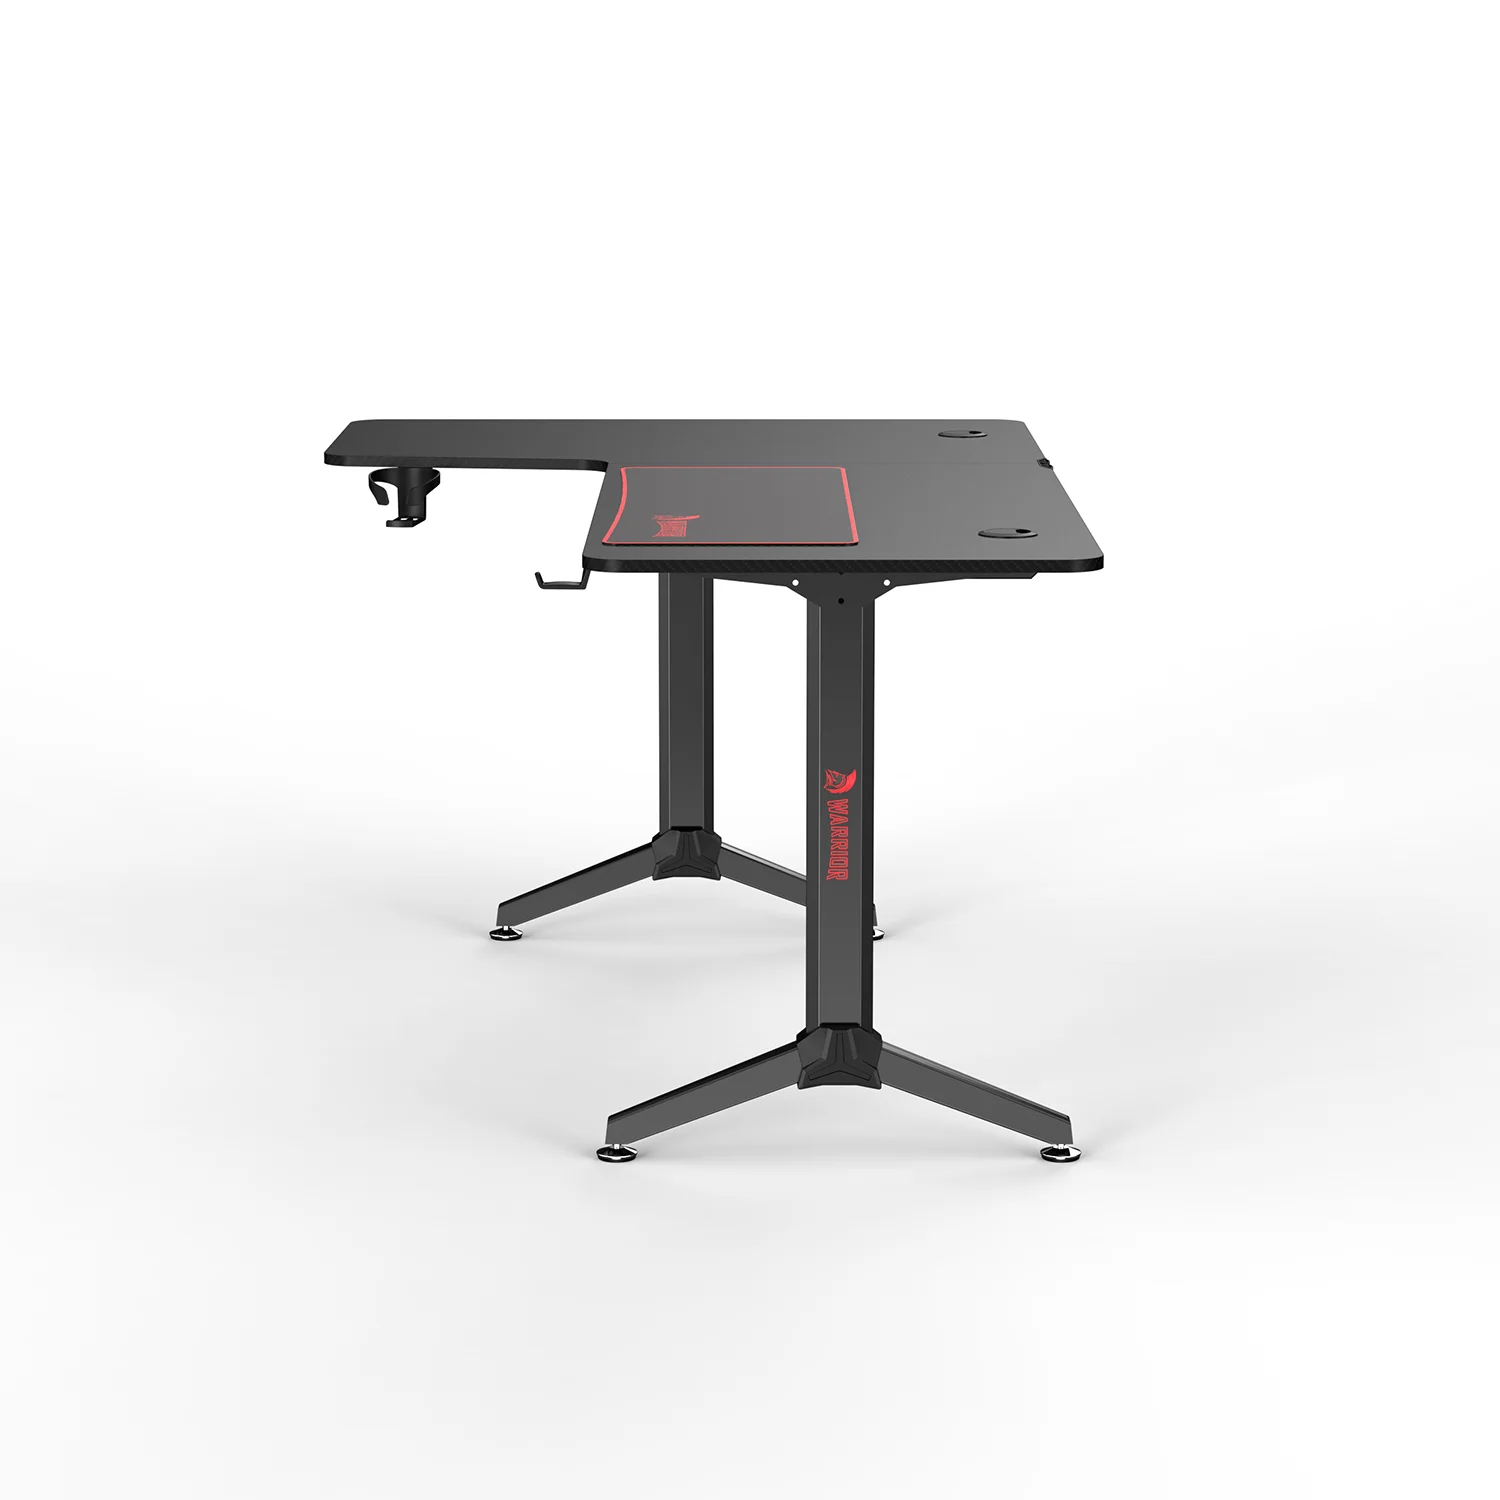 WARRIOR L alakú gamer asztal bal oldali kialakítás, alumínium, fekete színben, egérpaddal 160x60x75cm (HY-L)